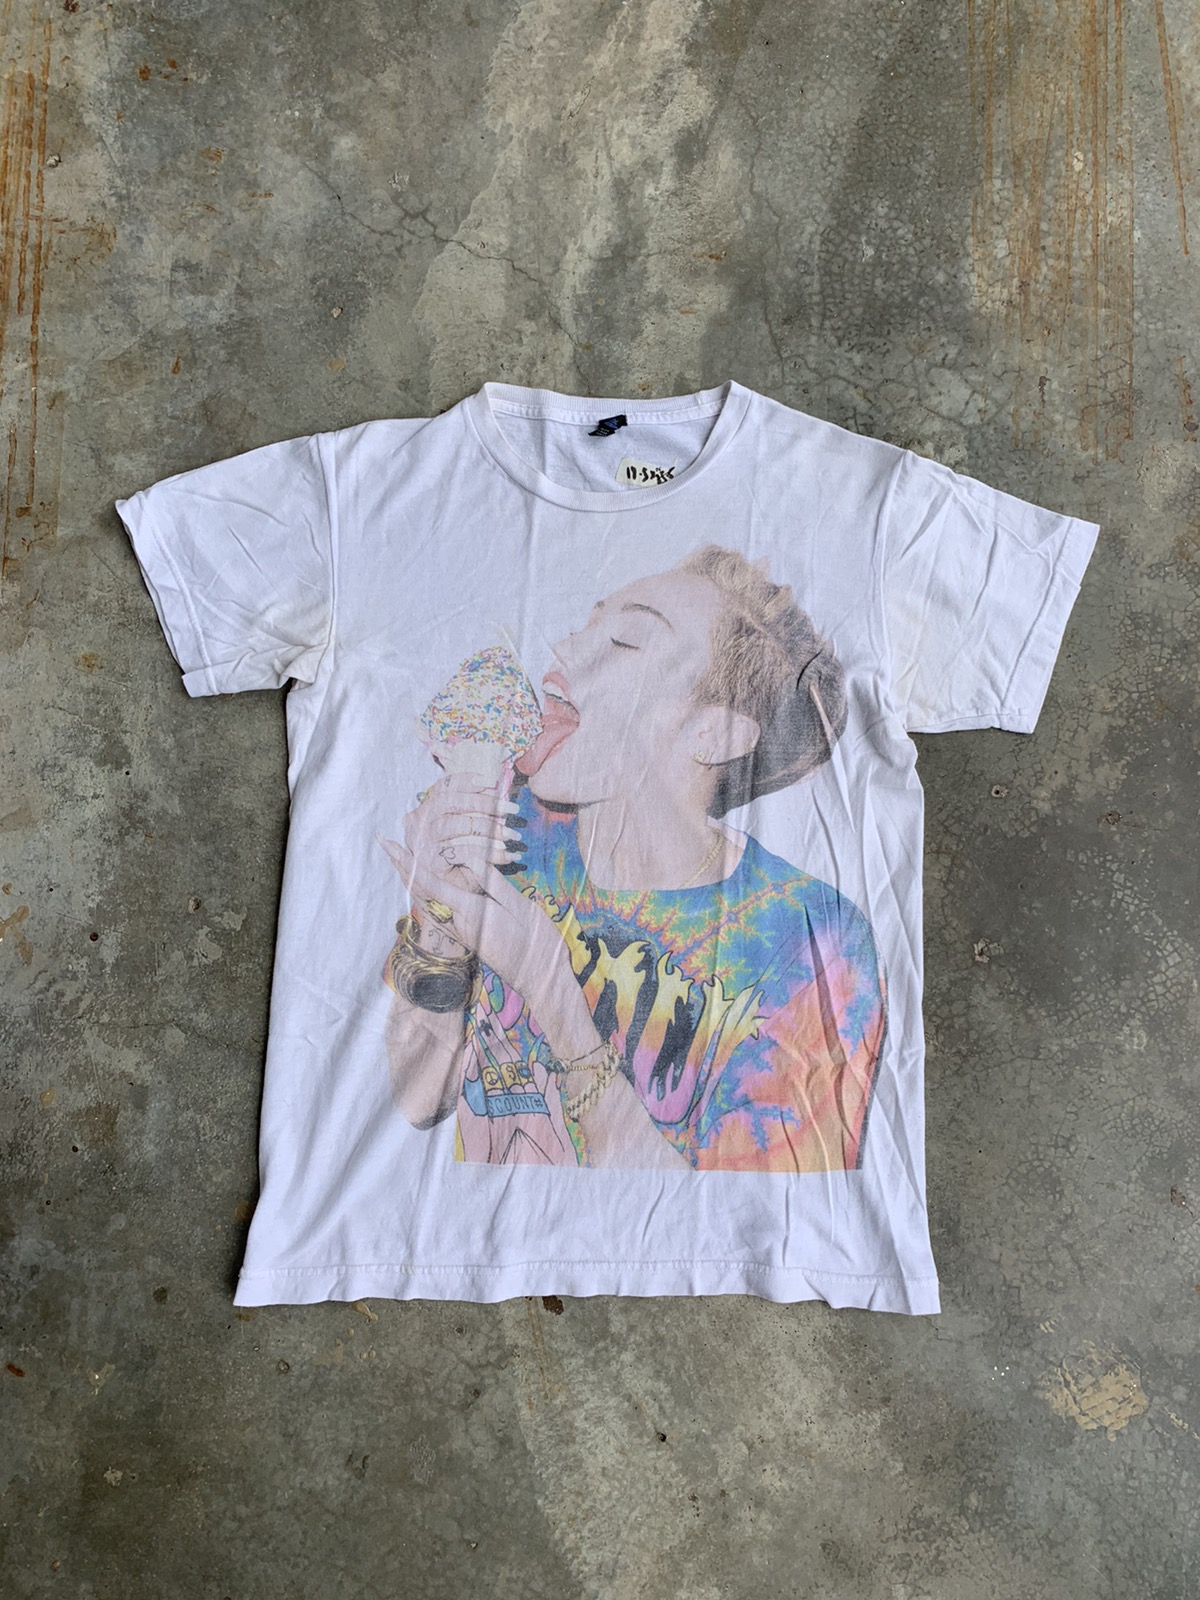 Tultex - Miley Cyrus Icecream Tshirt - 1